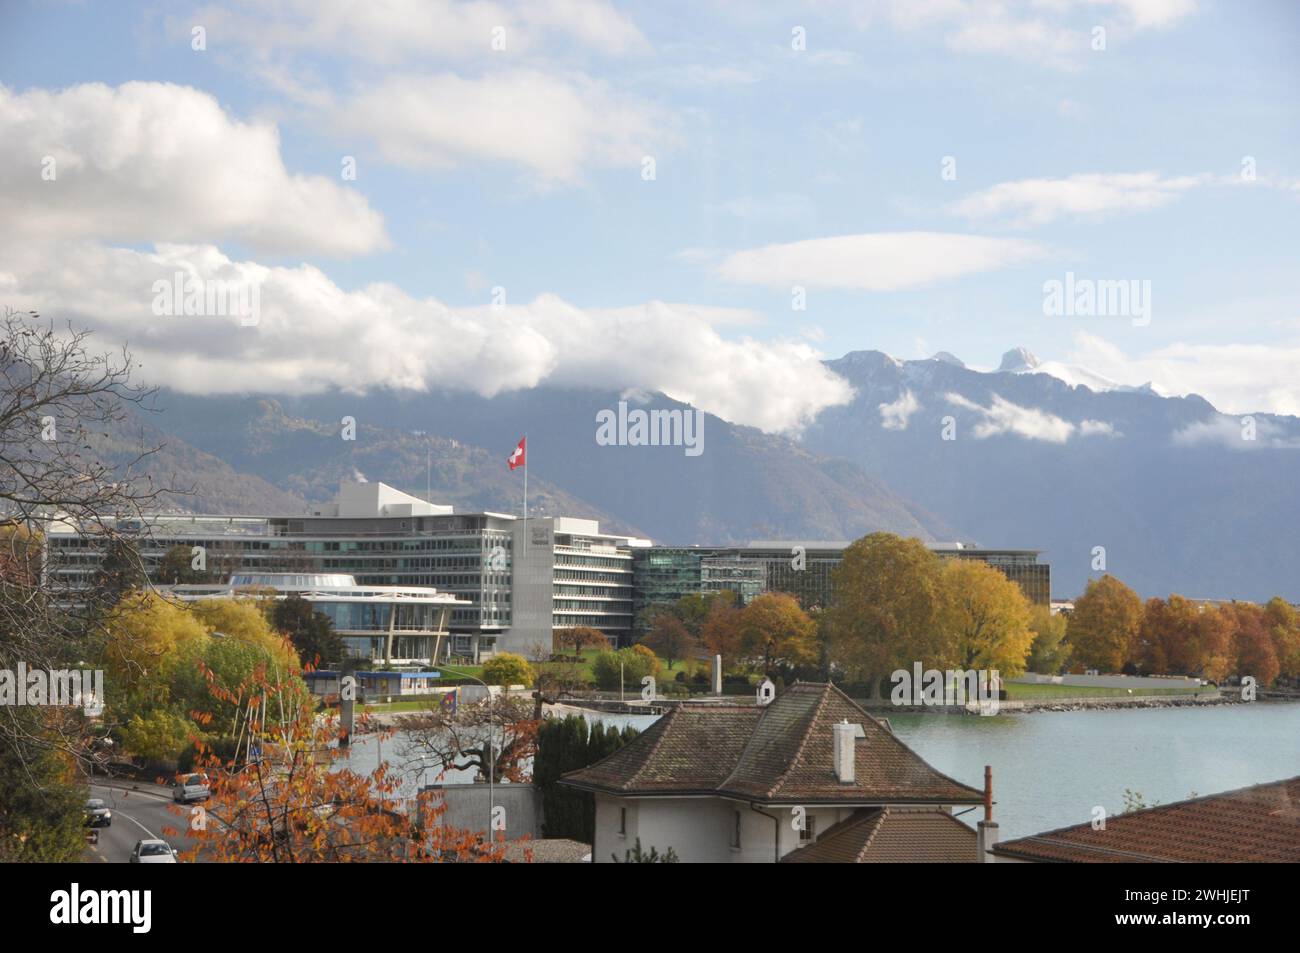 Suisse : Nestlé Headquartier in Vevey at Lake Geneva | Vevey : Der Hauptsitz des Nahrungsmittel-Multis Nestlé am Genfersee Banque D'Images